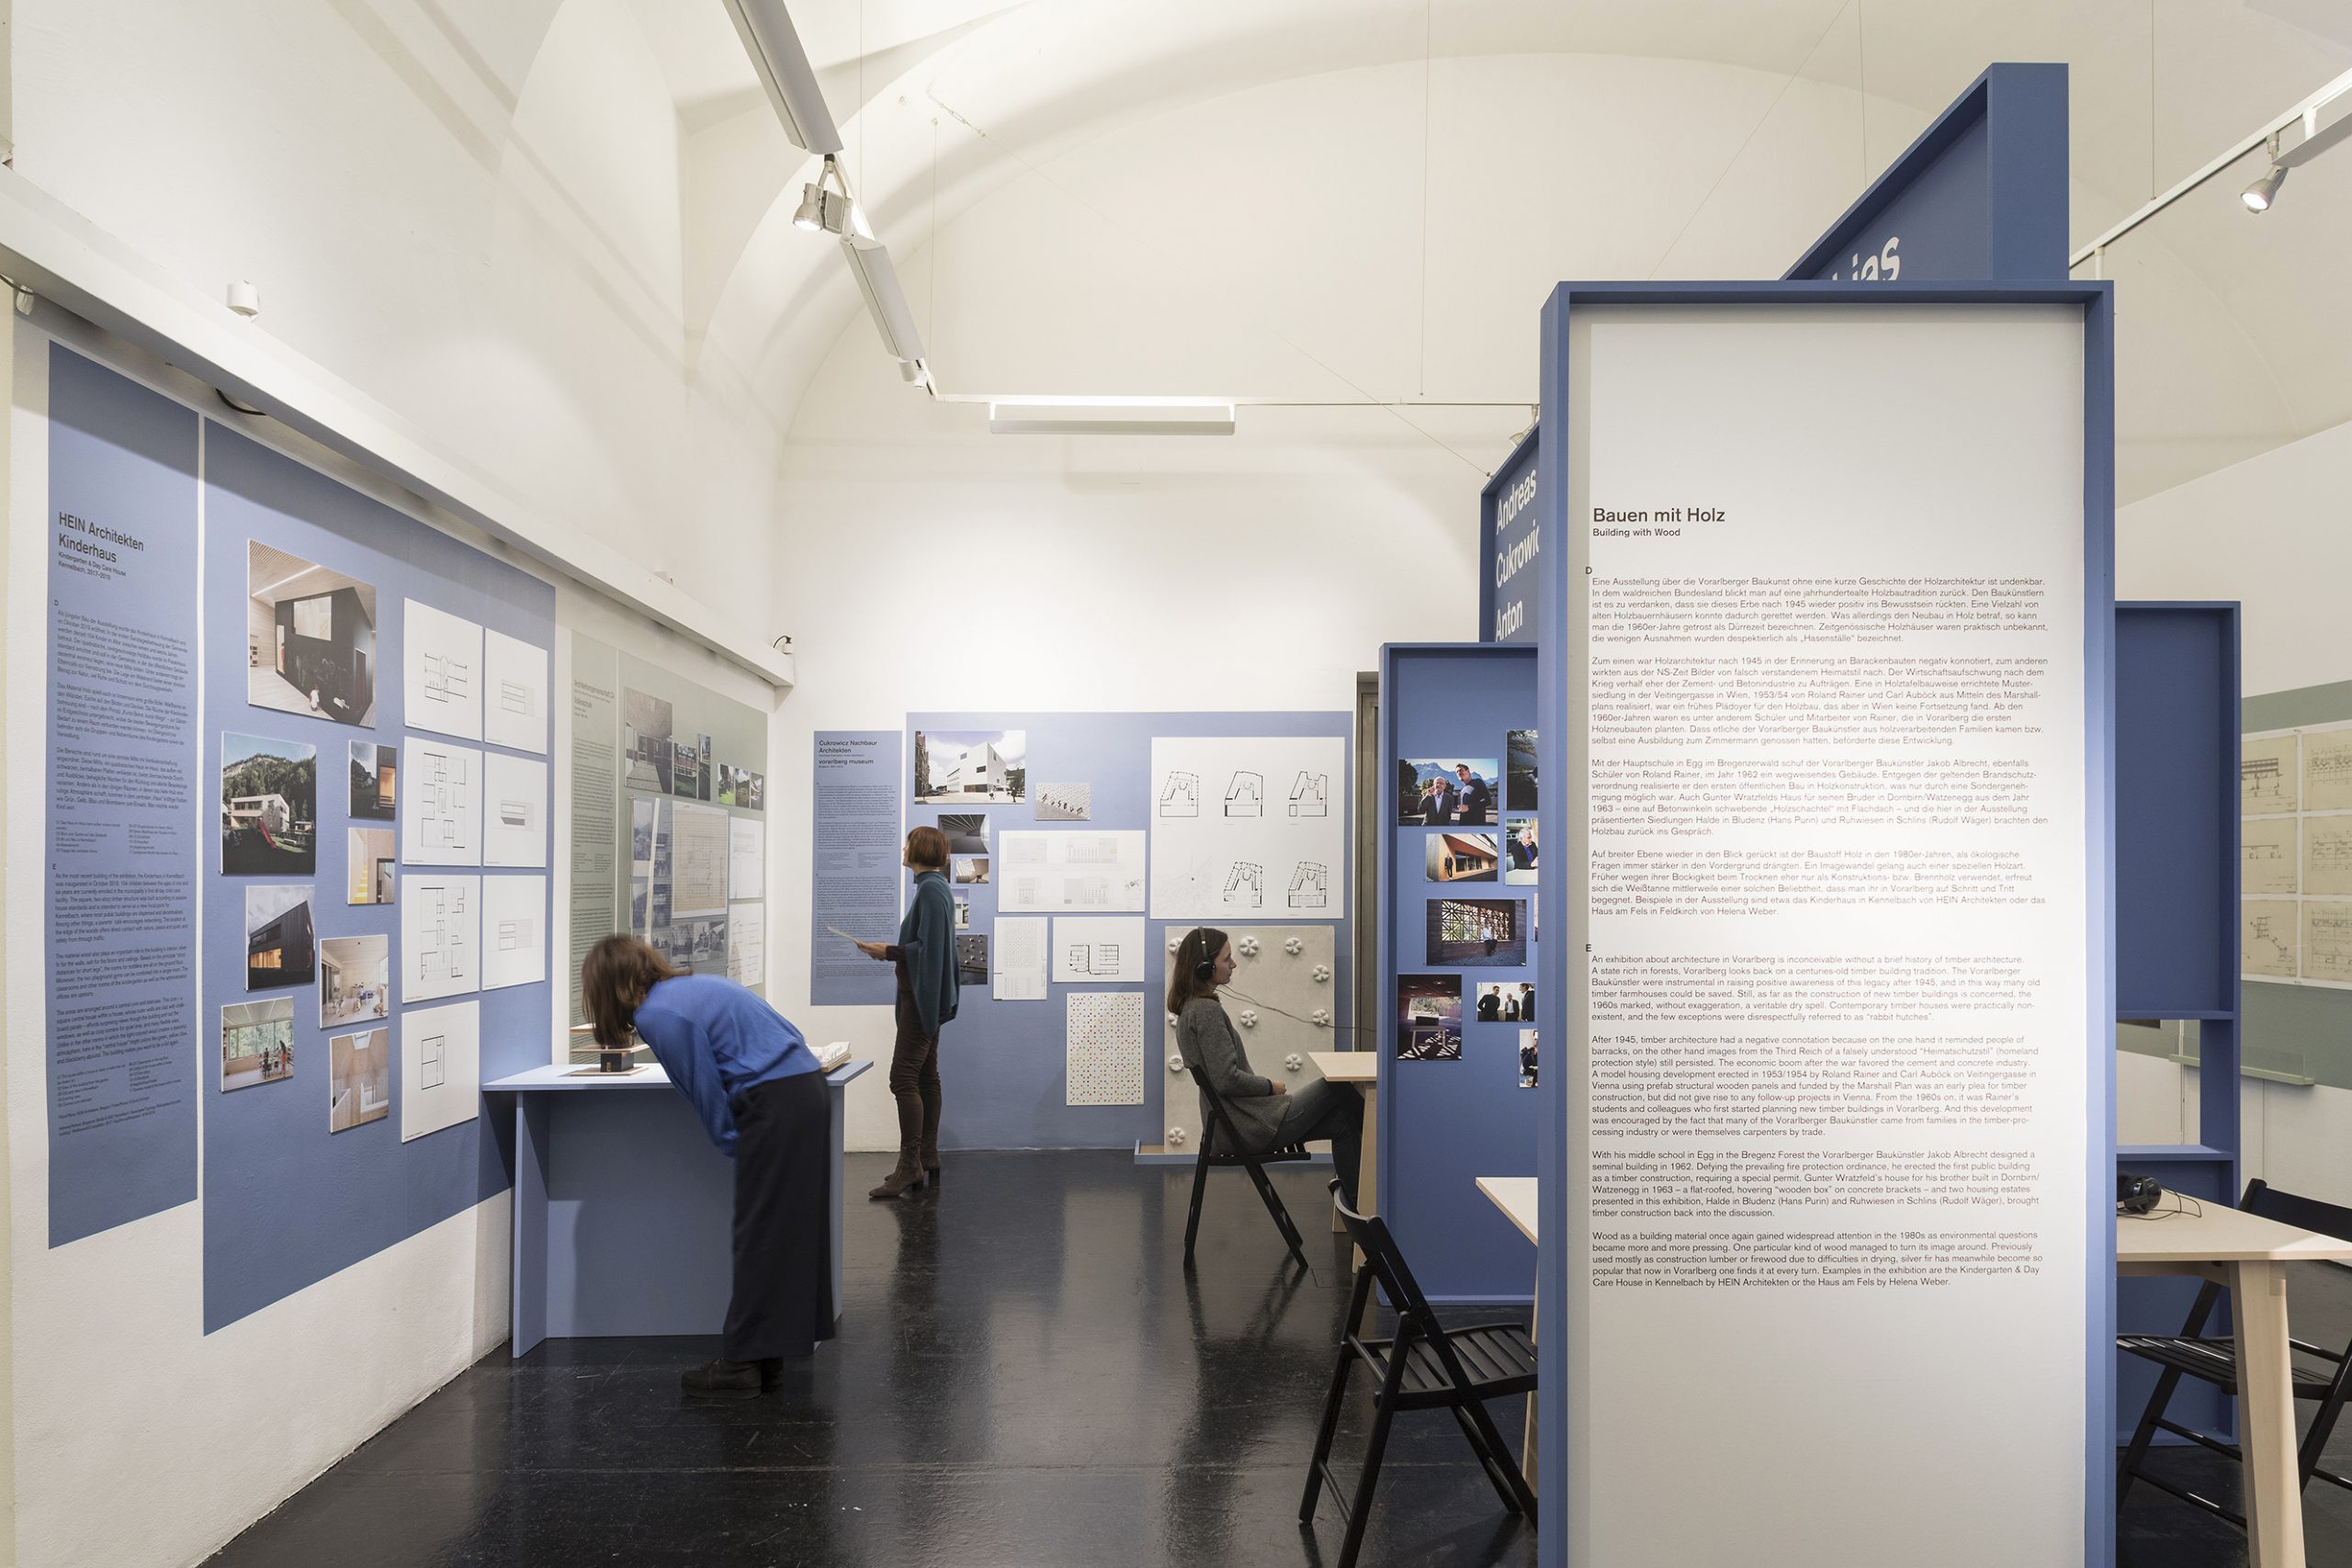 Ausstellungsraum mit blauen Tafeln und Wänden, 2 Personen stehen, 1 Person sitzt mit Kopfhörern